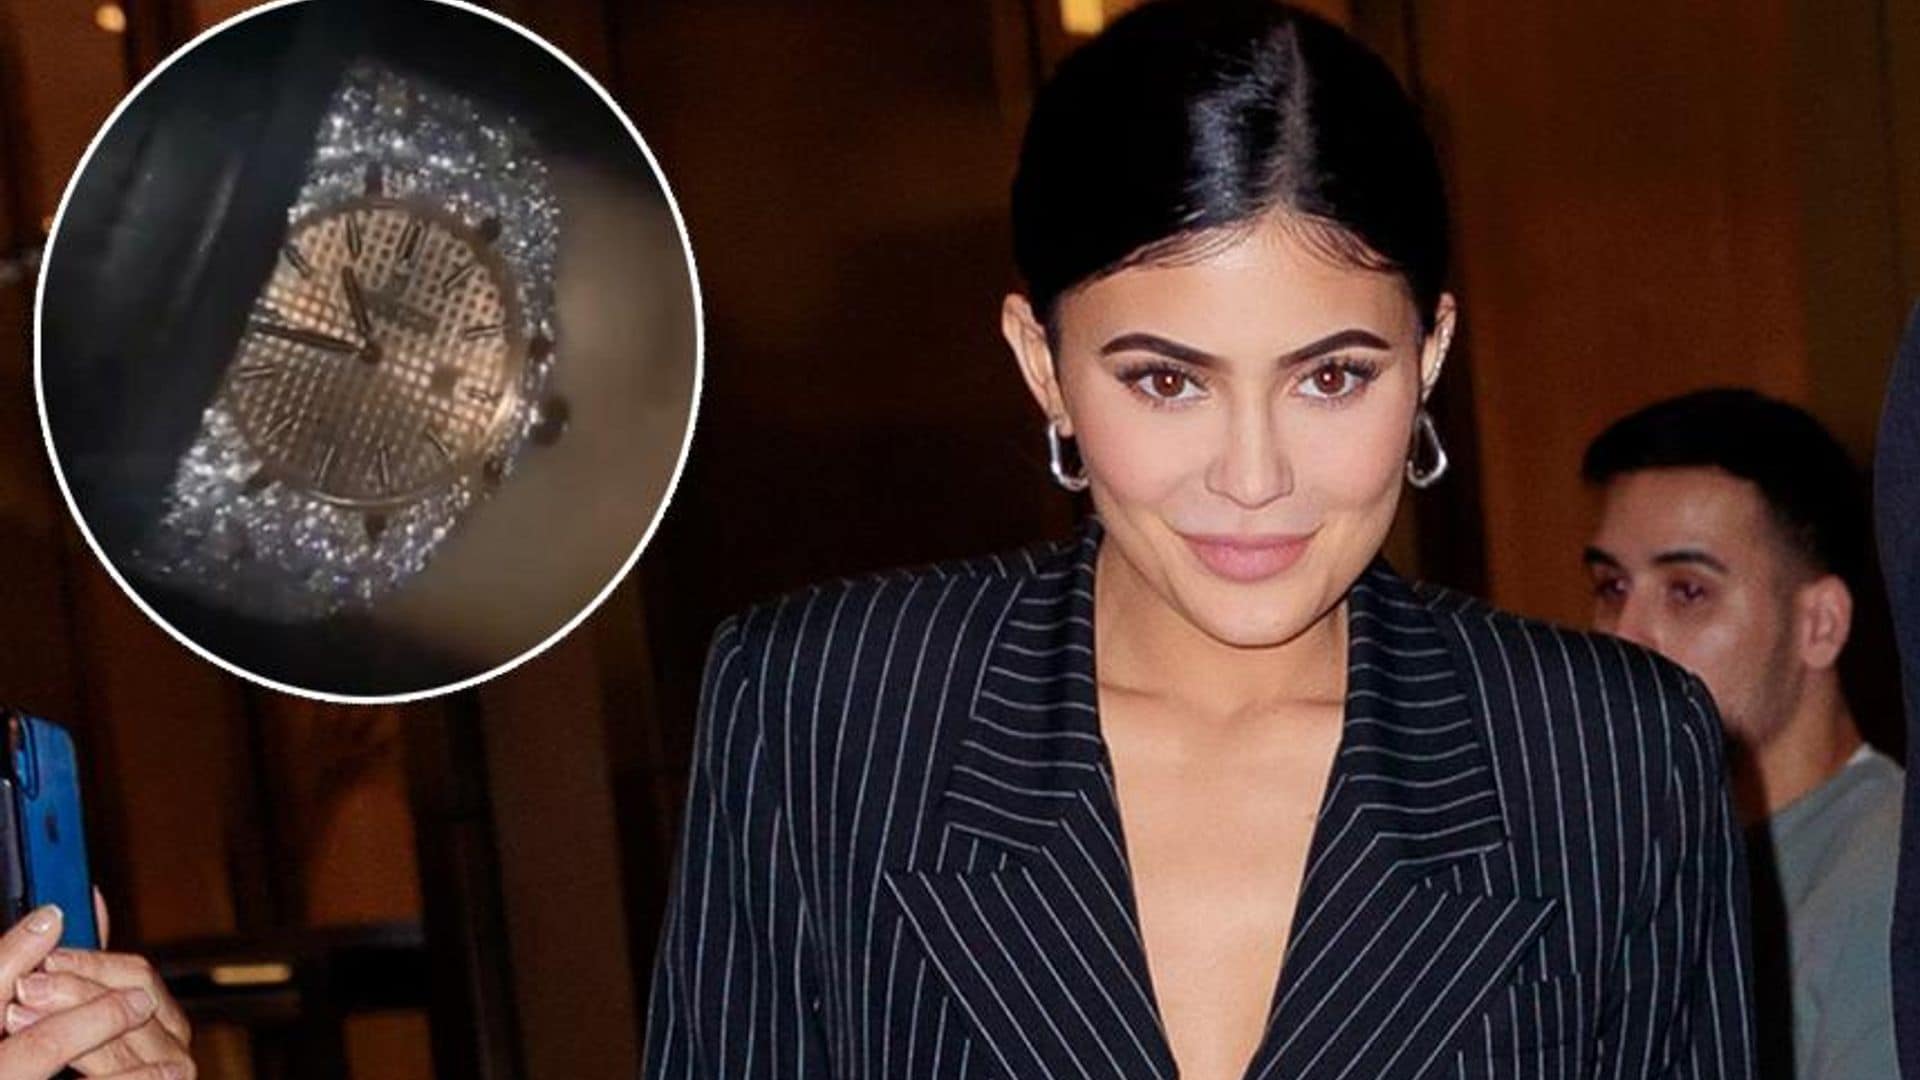 El costoso reloj de diamantes con el que Travis Scott sorprendió a Kylie Jenner